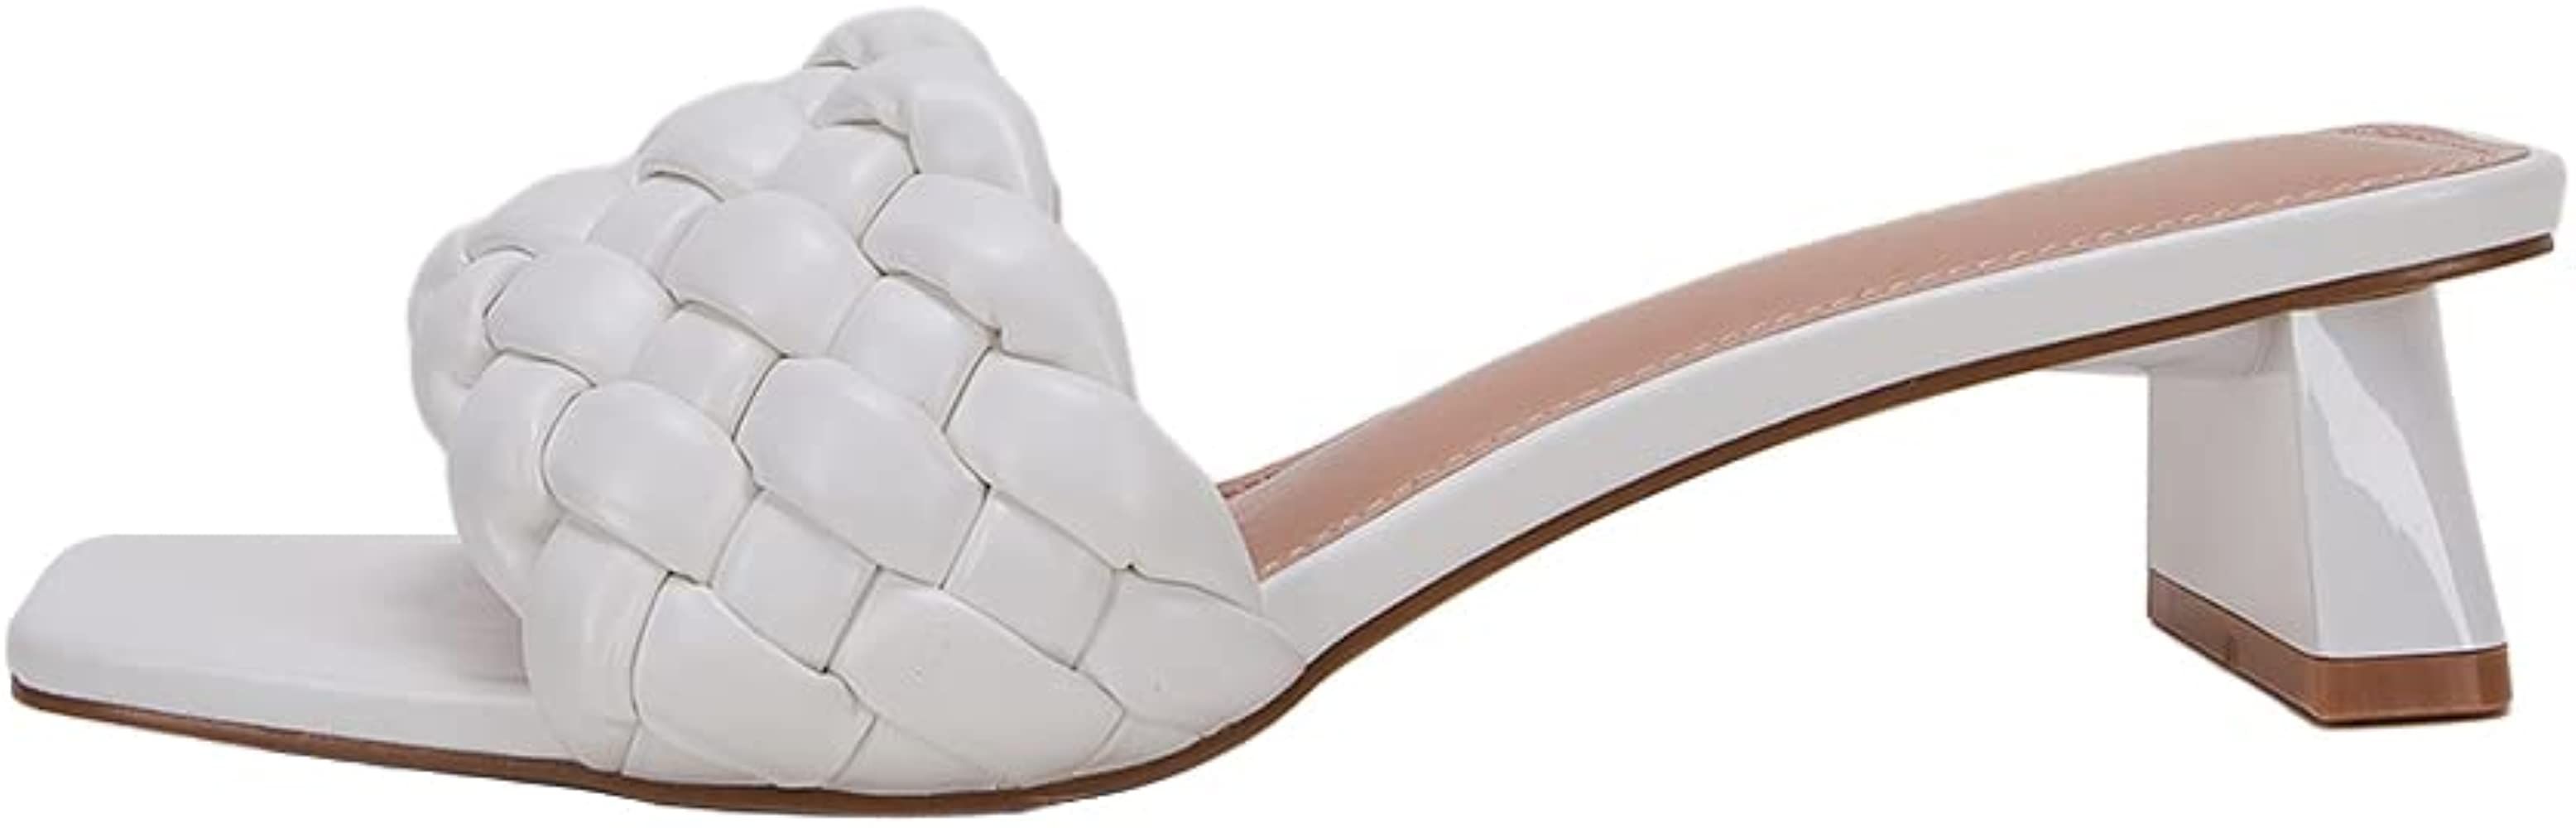 Braided Heeled Sandals | Amazon (US)